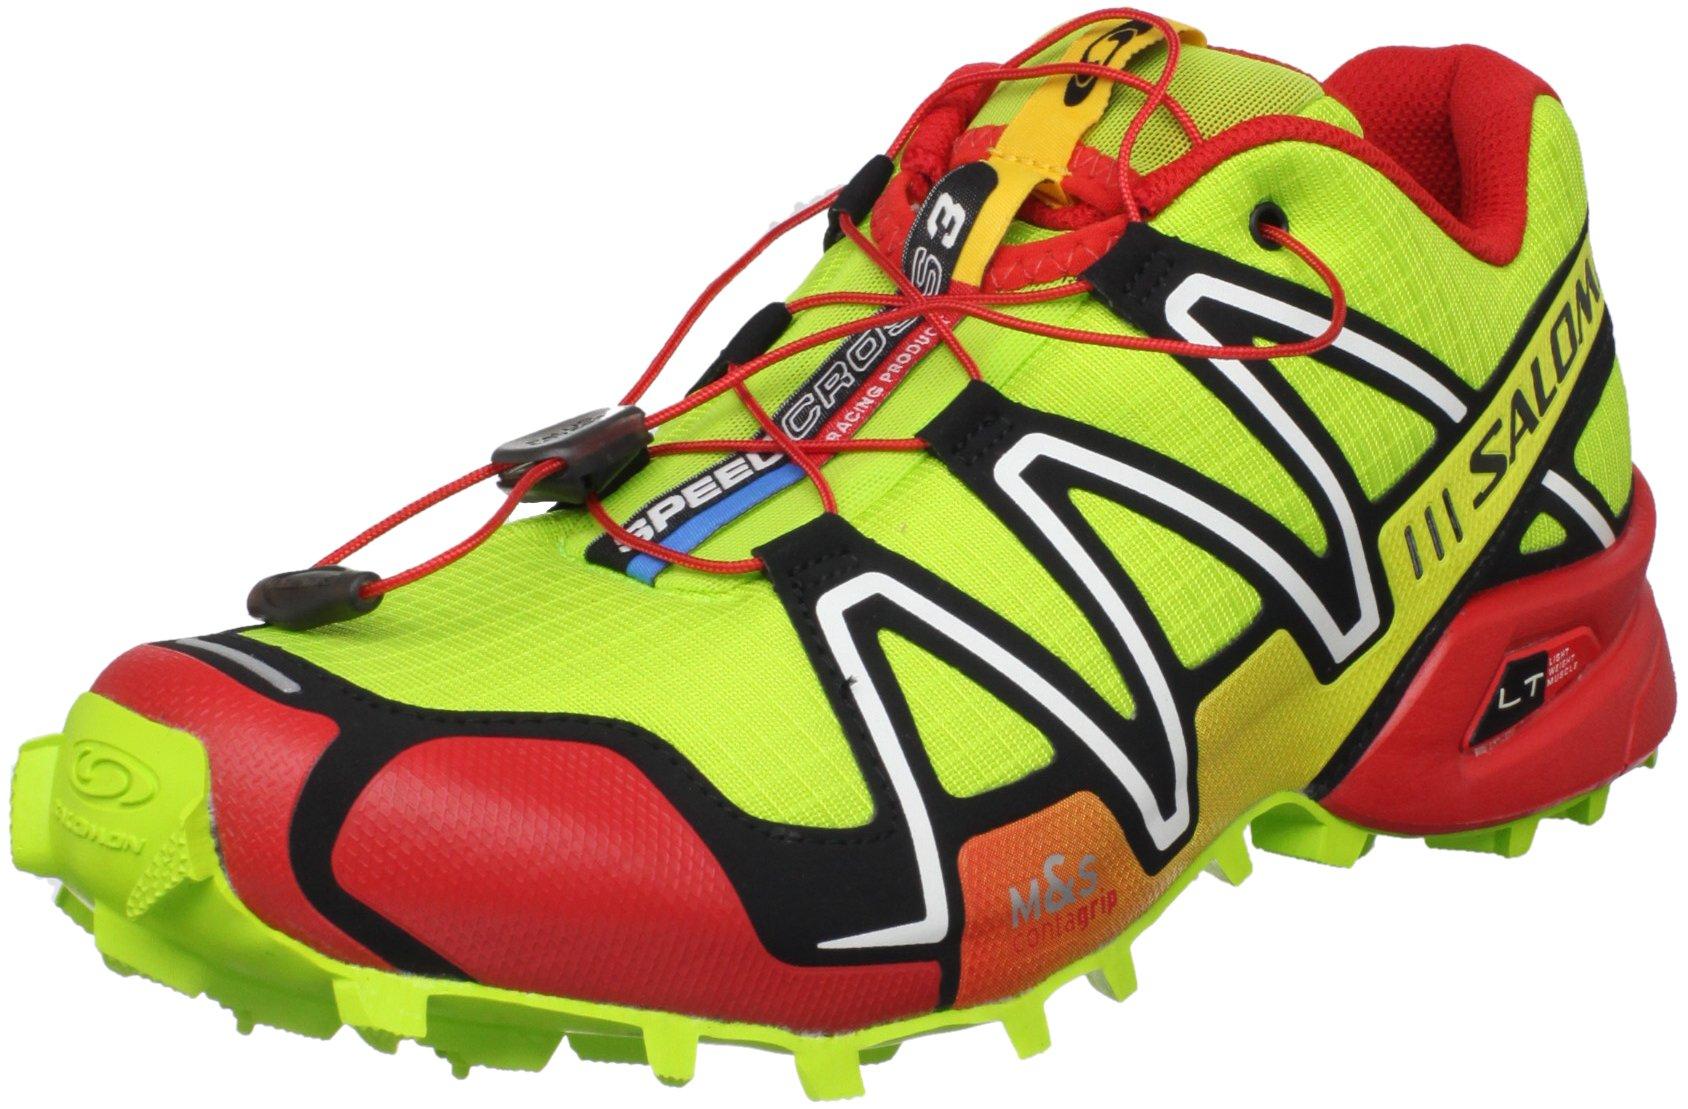 Salomon Speedcross Trail Shoe,pop Green/ Red/ Black,11.5 M Us for Men | Lyst